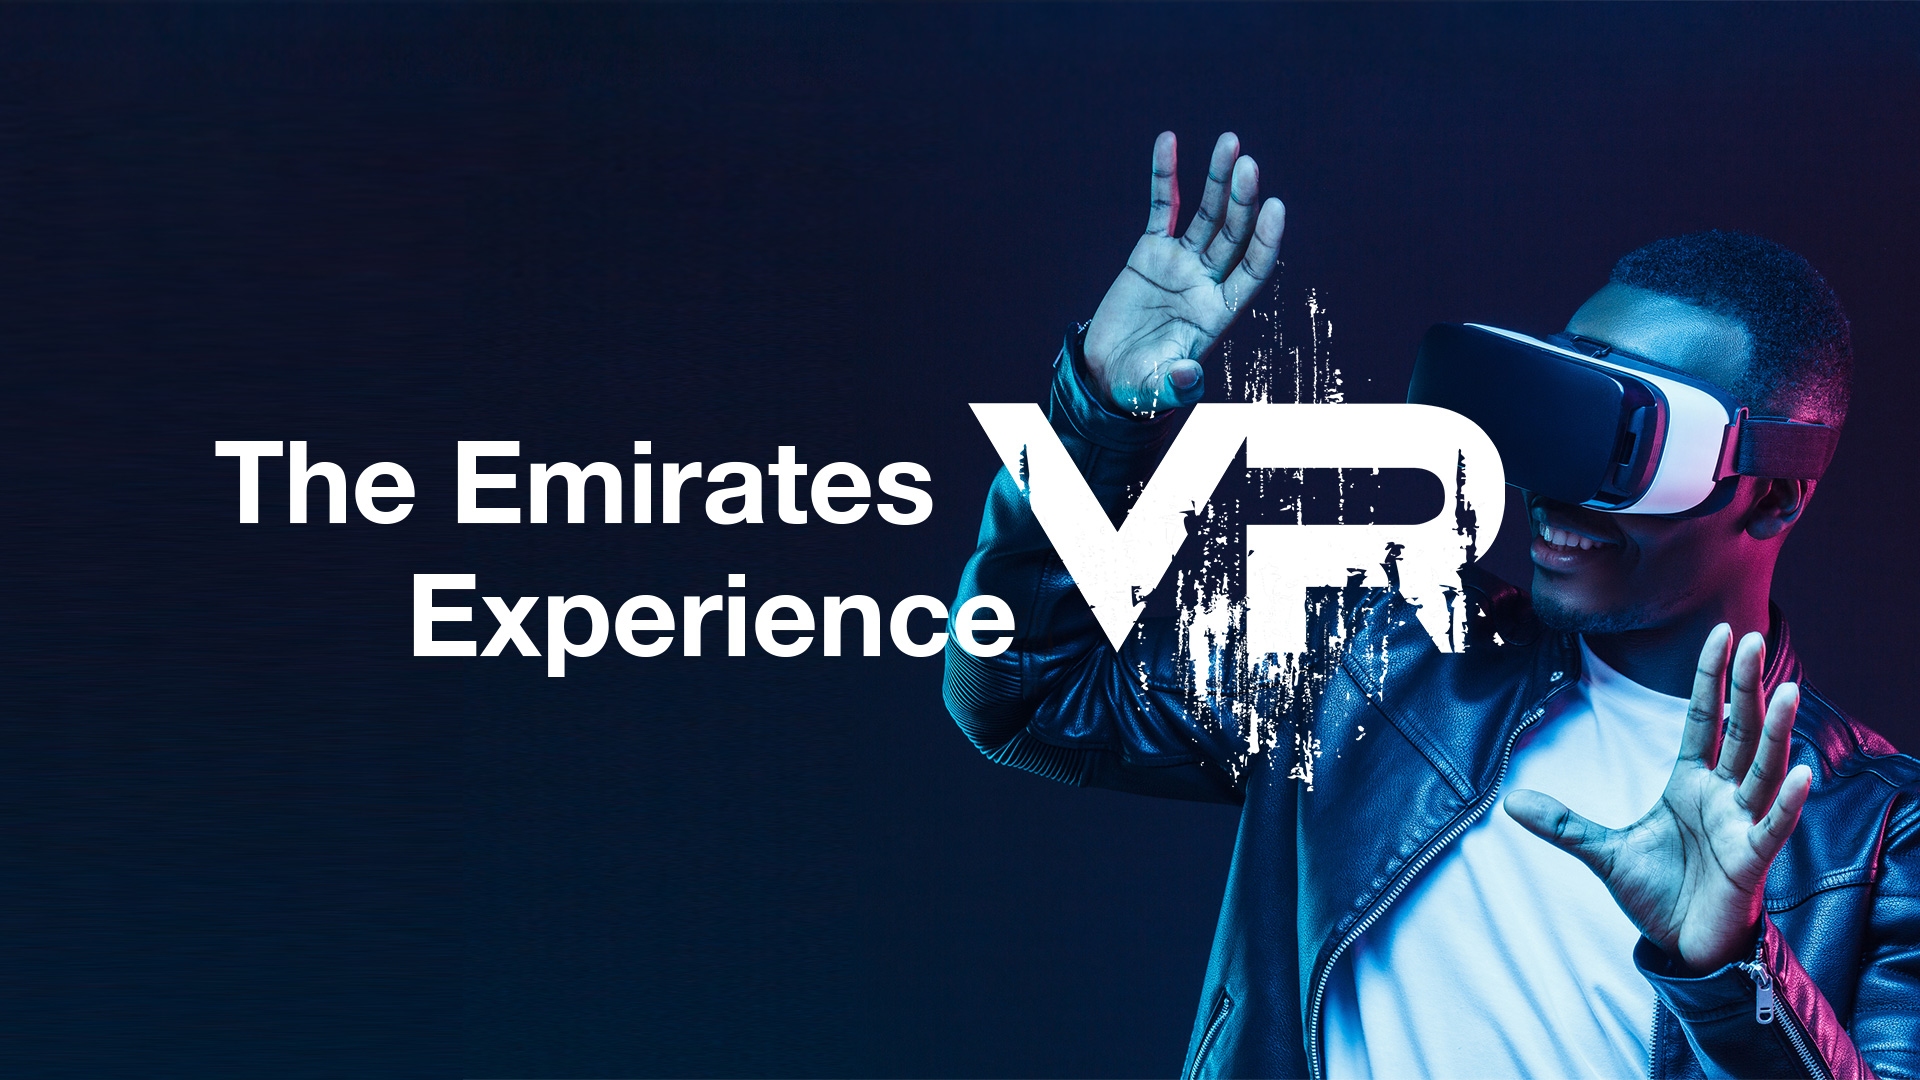 图片展示一位戴着虚拟现实头盔的人，正享受VR体验，背景有文字“阿联酋VR体验”，整体色调酷炫现代。